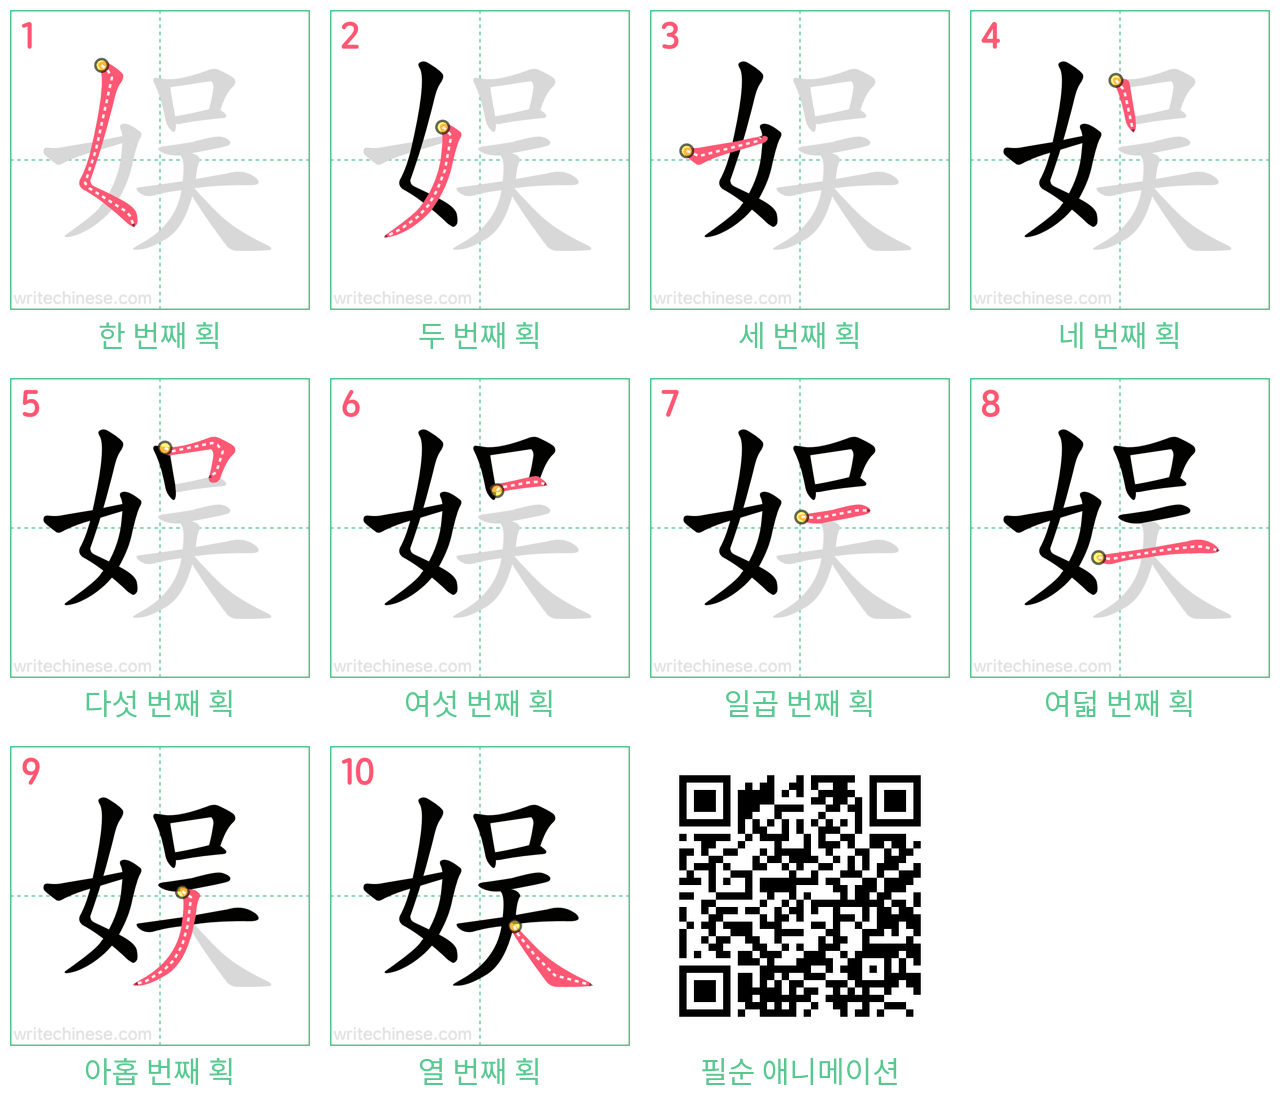 娱 step-by-step stroke order diagrams